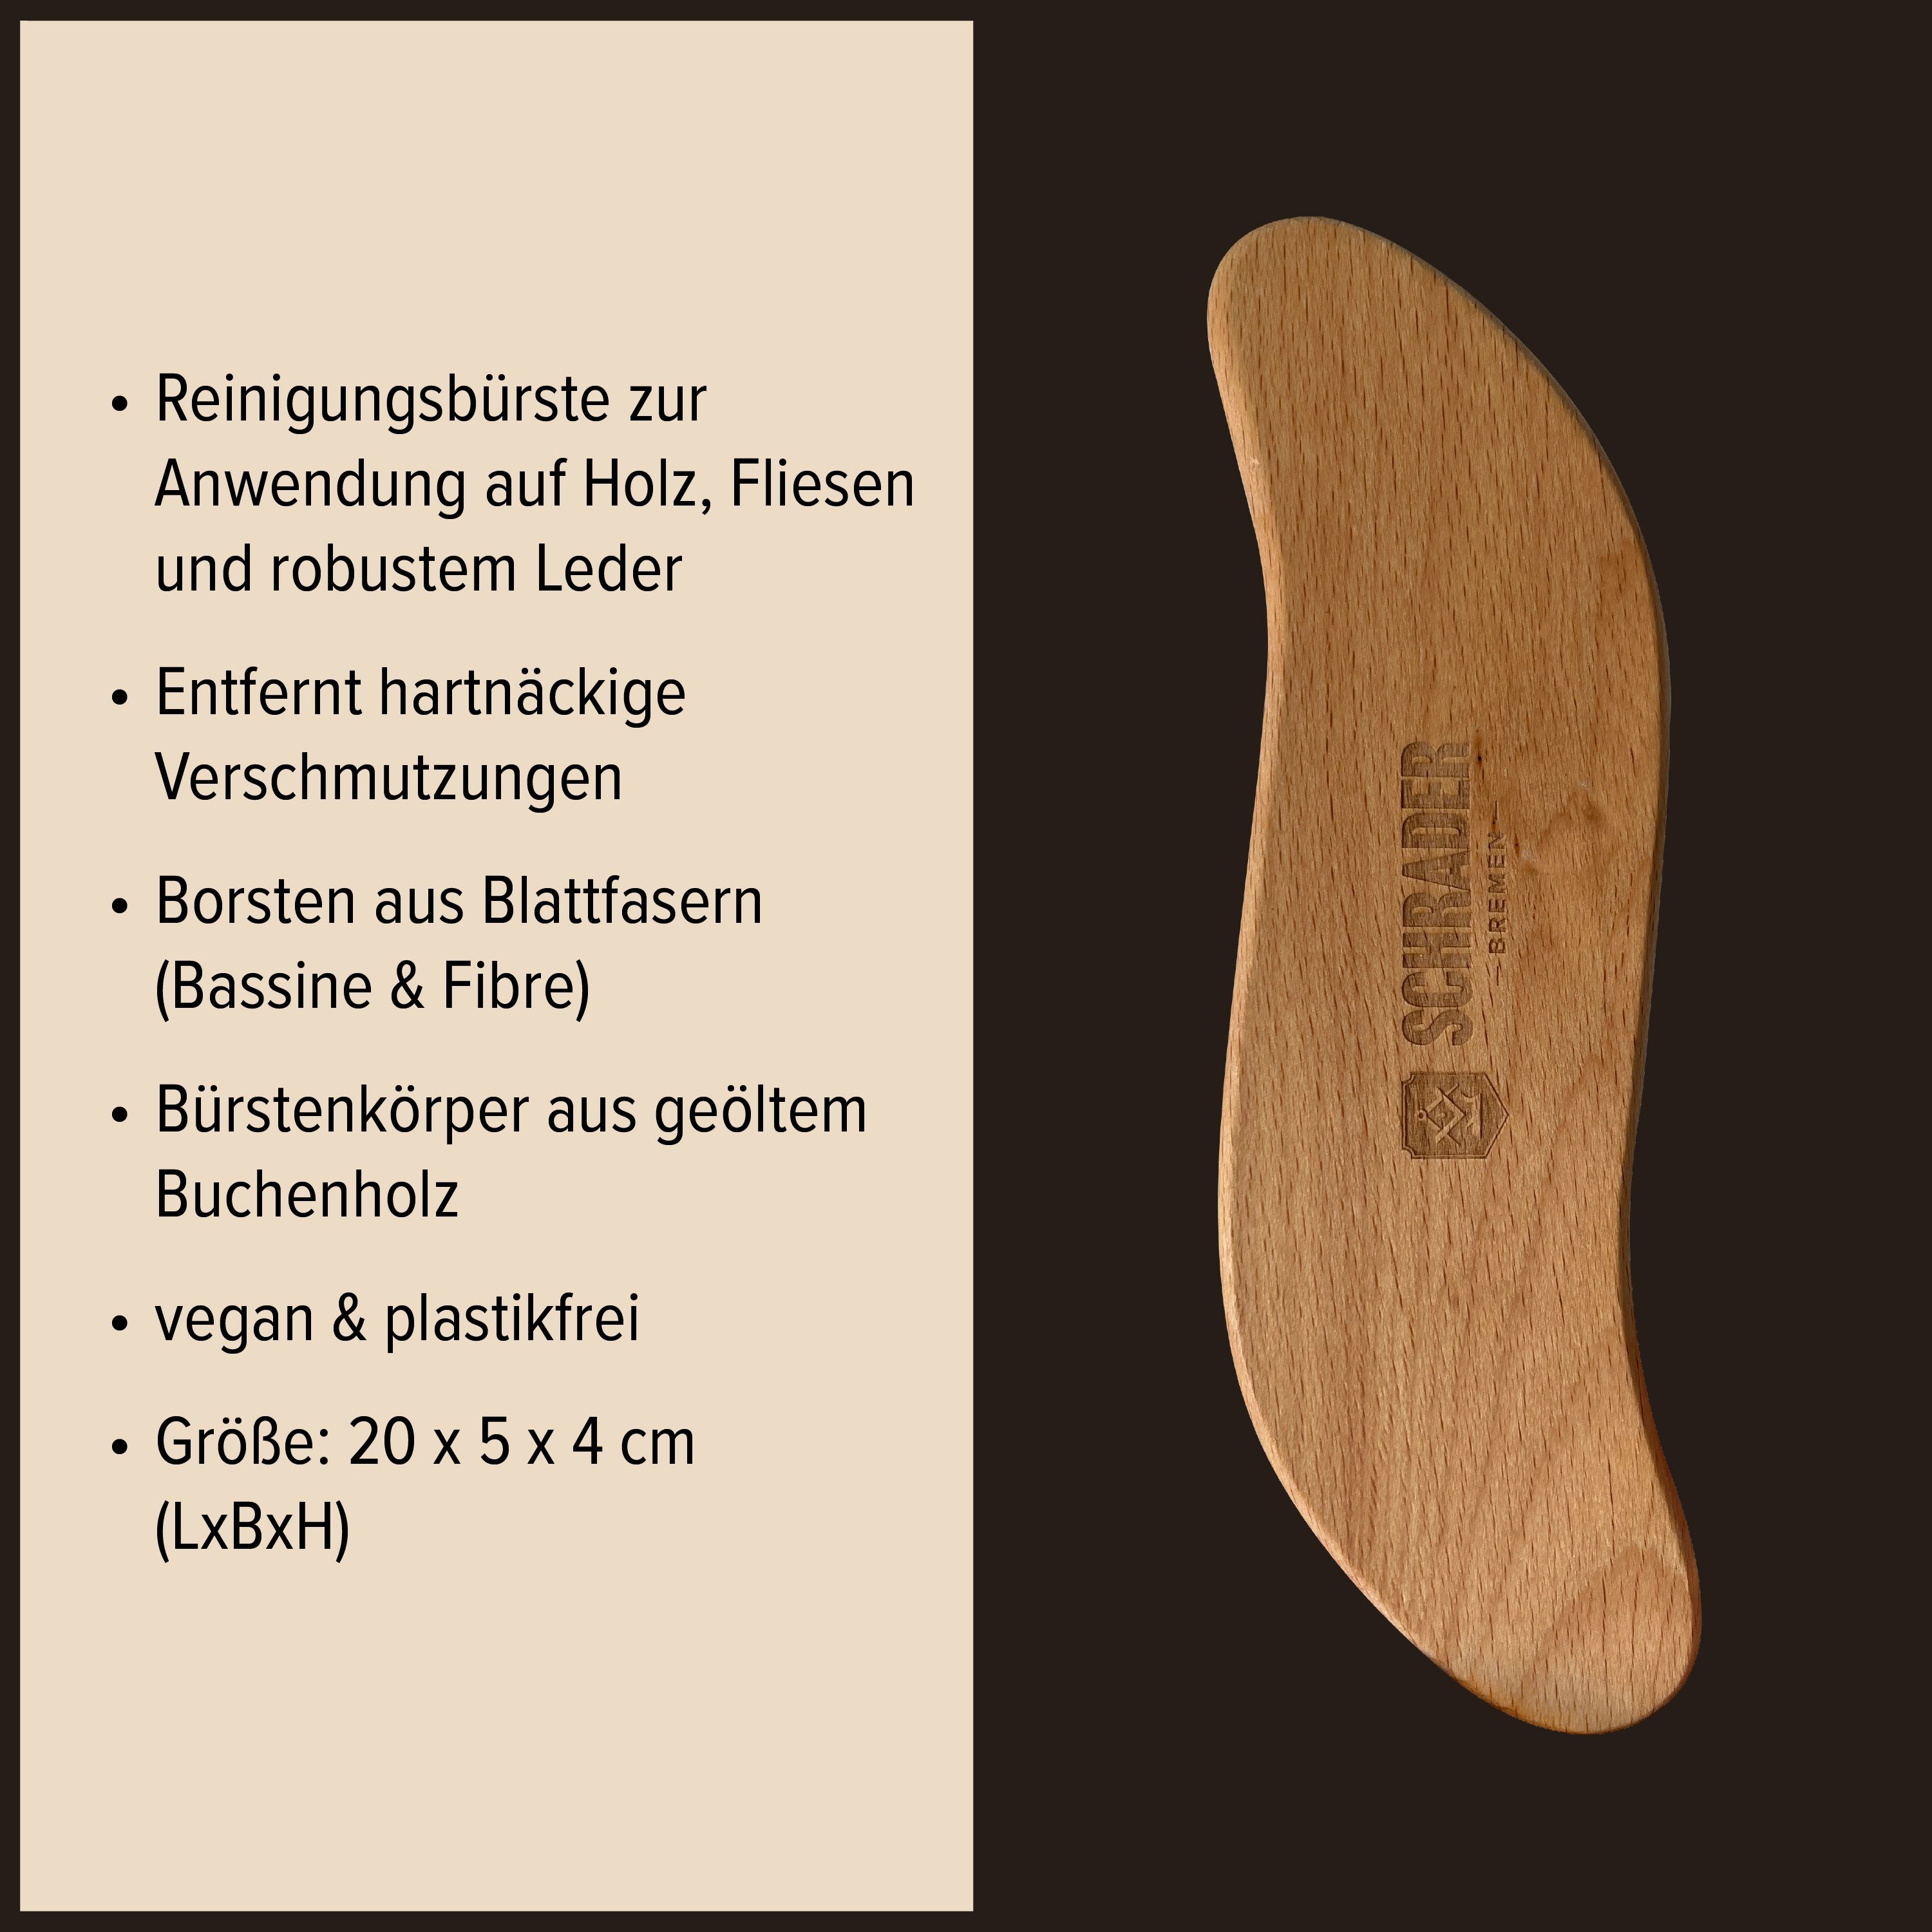 zur Schrader - Fliesen und Reinigungsbürsten-Set 2er Holz, Scheuerbürste von - in Germany Made -, Schmutzbürste Leder Reinigung